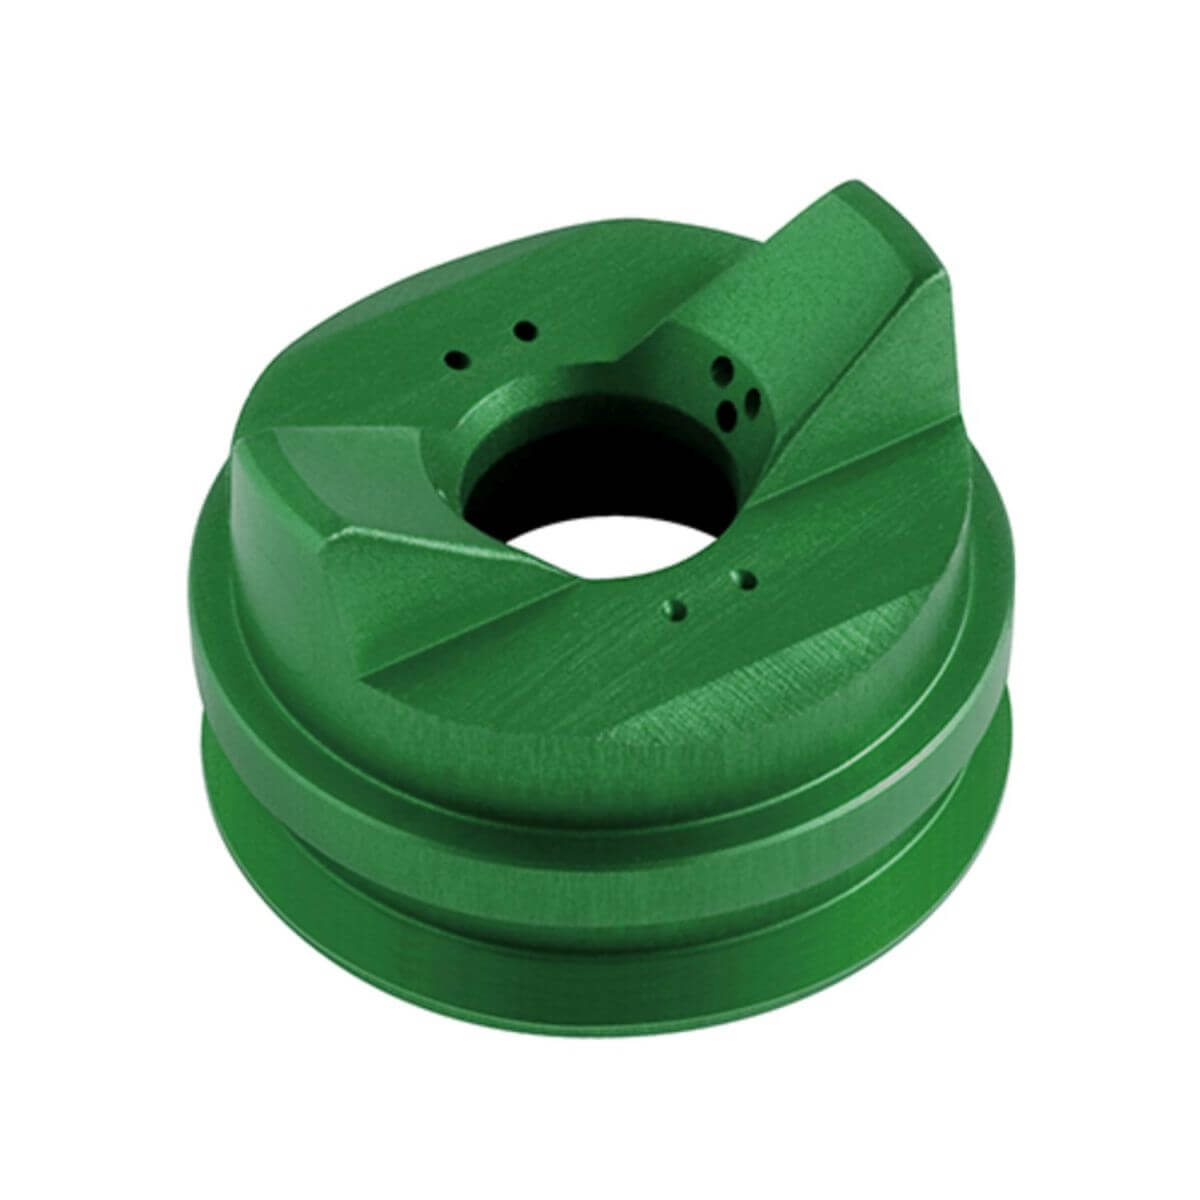 WAGNER Luftkappe grün für wasserverdünnbare & lösemittelhaltige Materialien | für AirCoat Pistolen